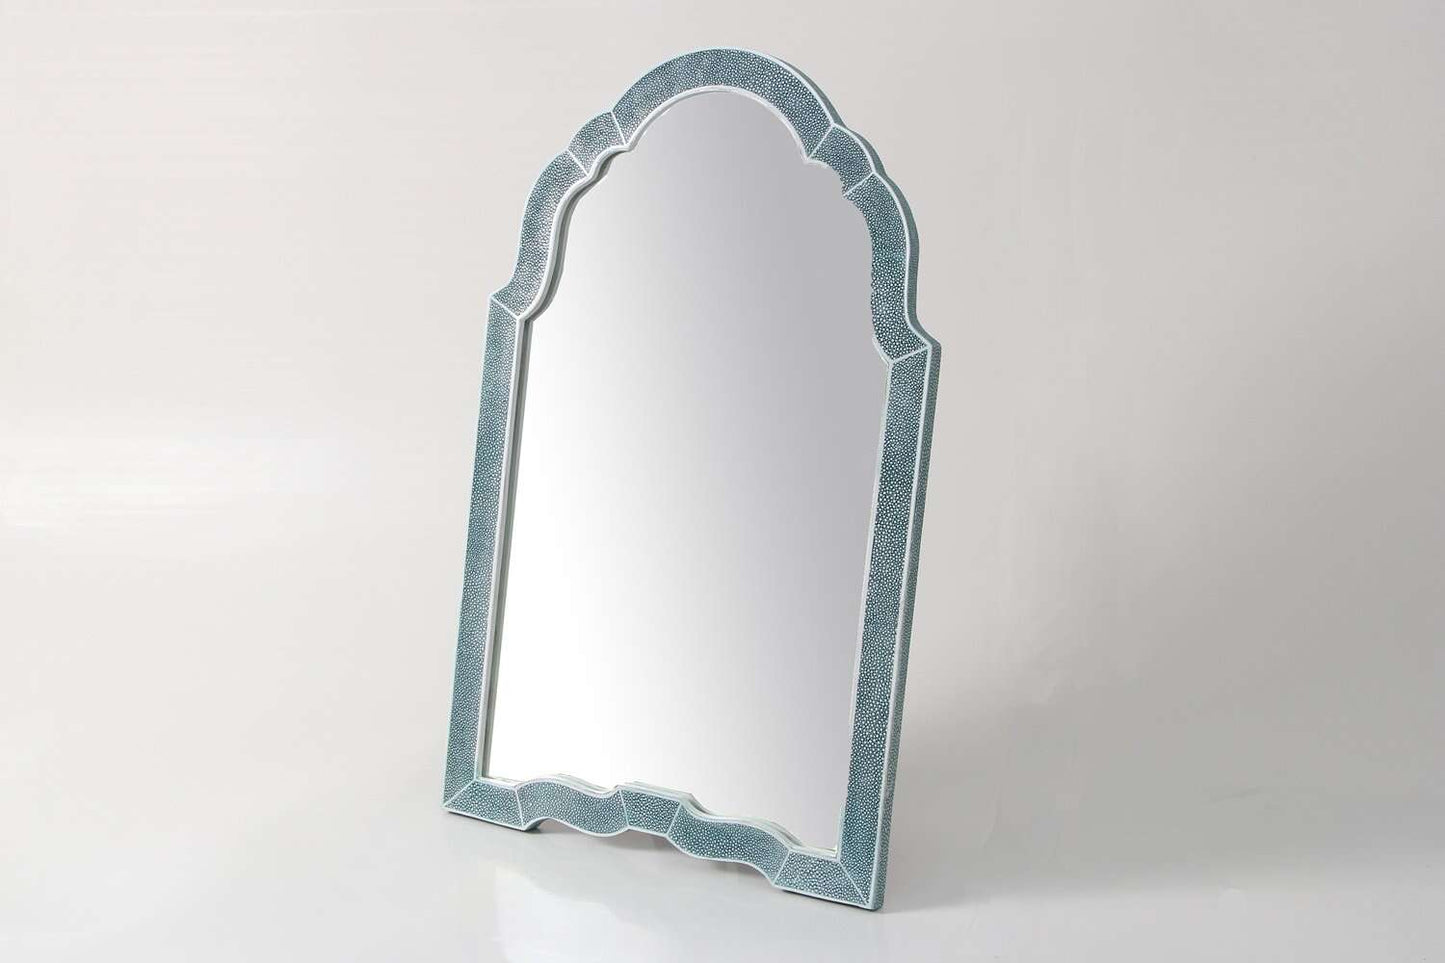  https://forwooddesign.com/app/uploads/2019/07/Teal-shagreen-dressing-table-mirror-2.jpg